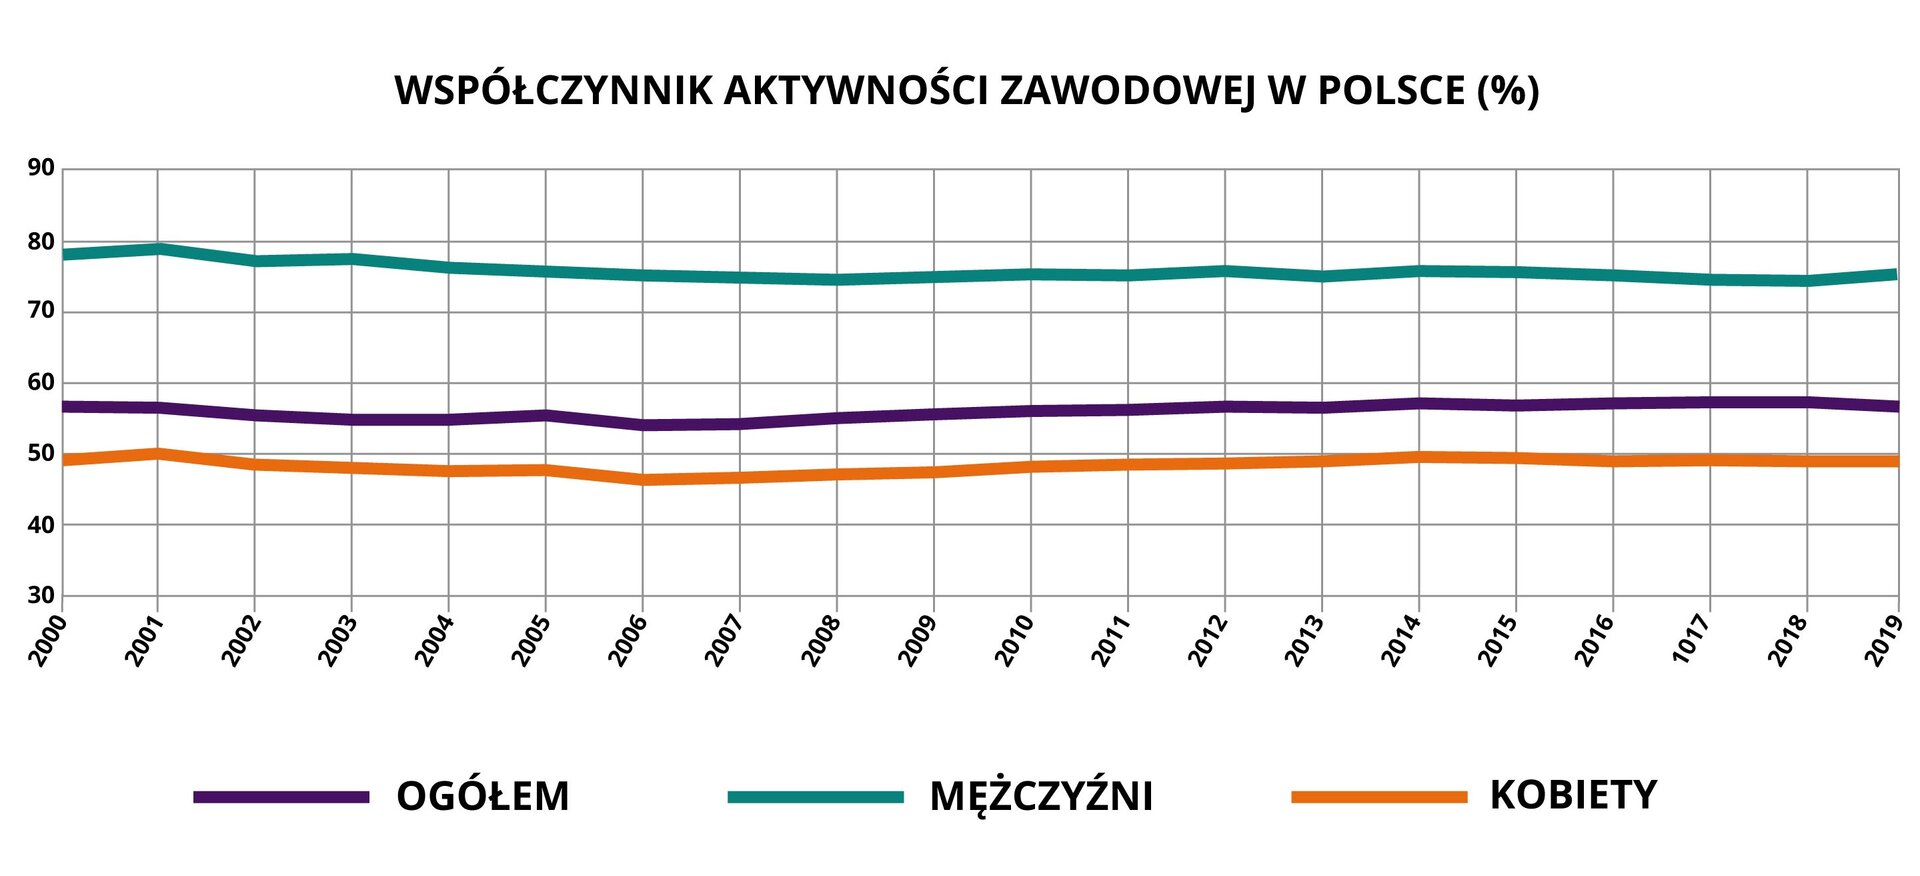 na wykresie liniowym przedstawiono dane dotyczące współczynnika aktywności zawodowej w Polsce w procentach z podziałem na mężczyzn, kobiety i ogółem. Dane dotyczą lat od 2000 do 2019. Z wykresu wynika, iż współczynnik ten w odniesieniu do mężczyzn wynosił we wskazanych okresie około 80%, w odniesieniu do kobiet - około 50%, a ogółem poniżej 60%.